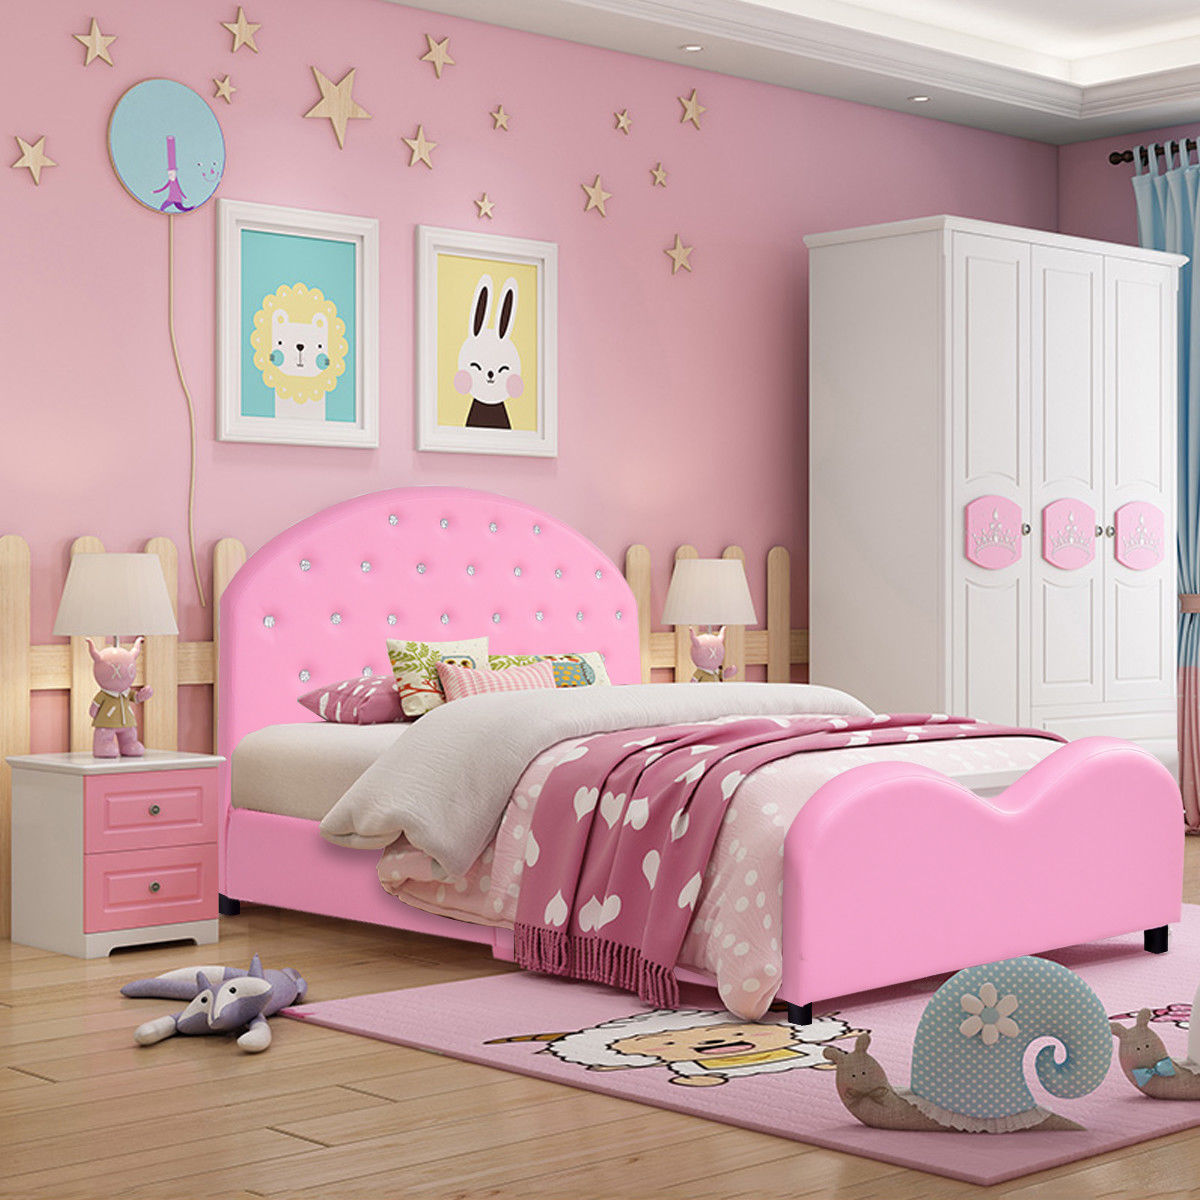 Costway Kids Children PU Upholstered Platform Wooden Princess Bed Bedroom Furniture Pink - image 1 of 9